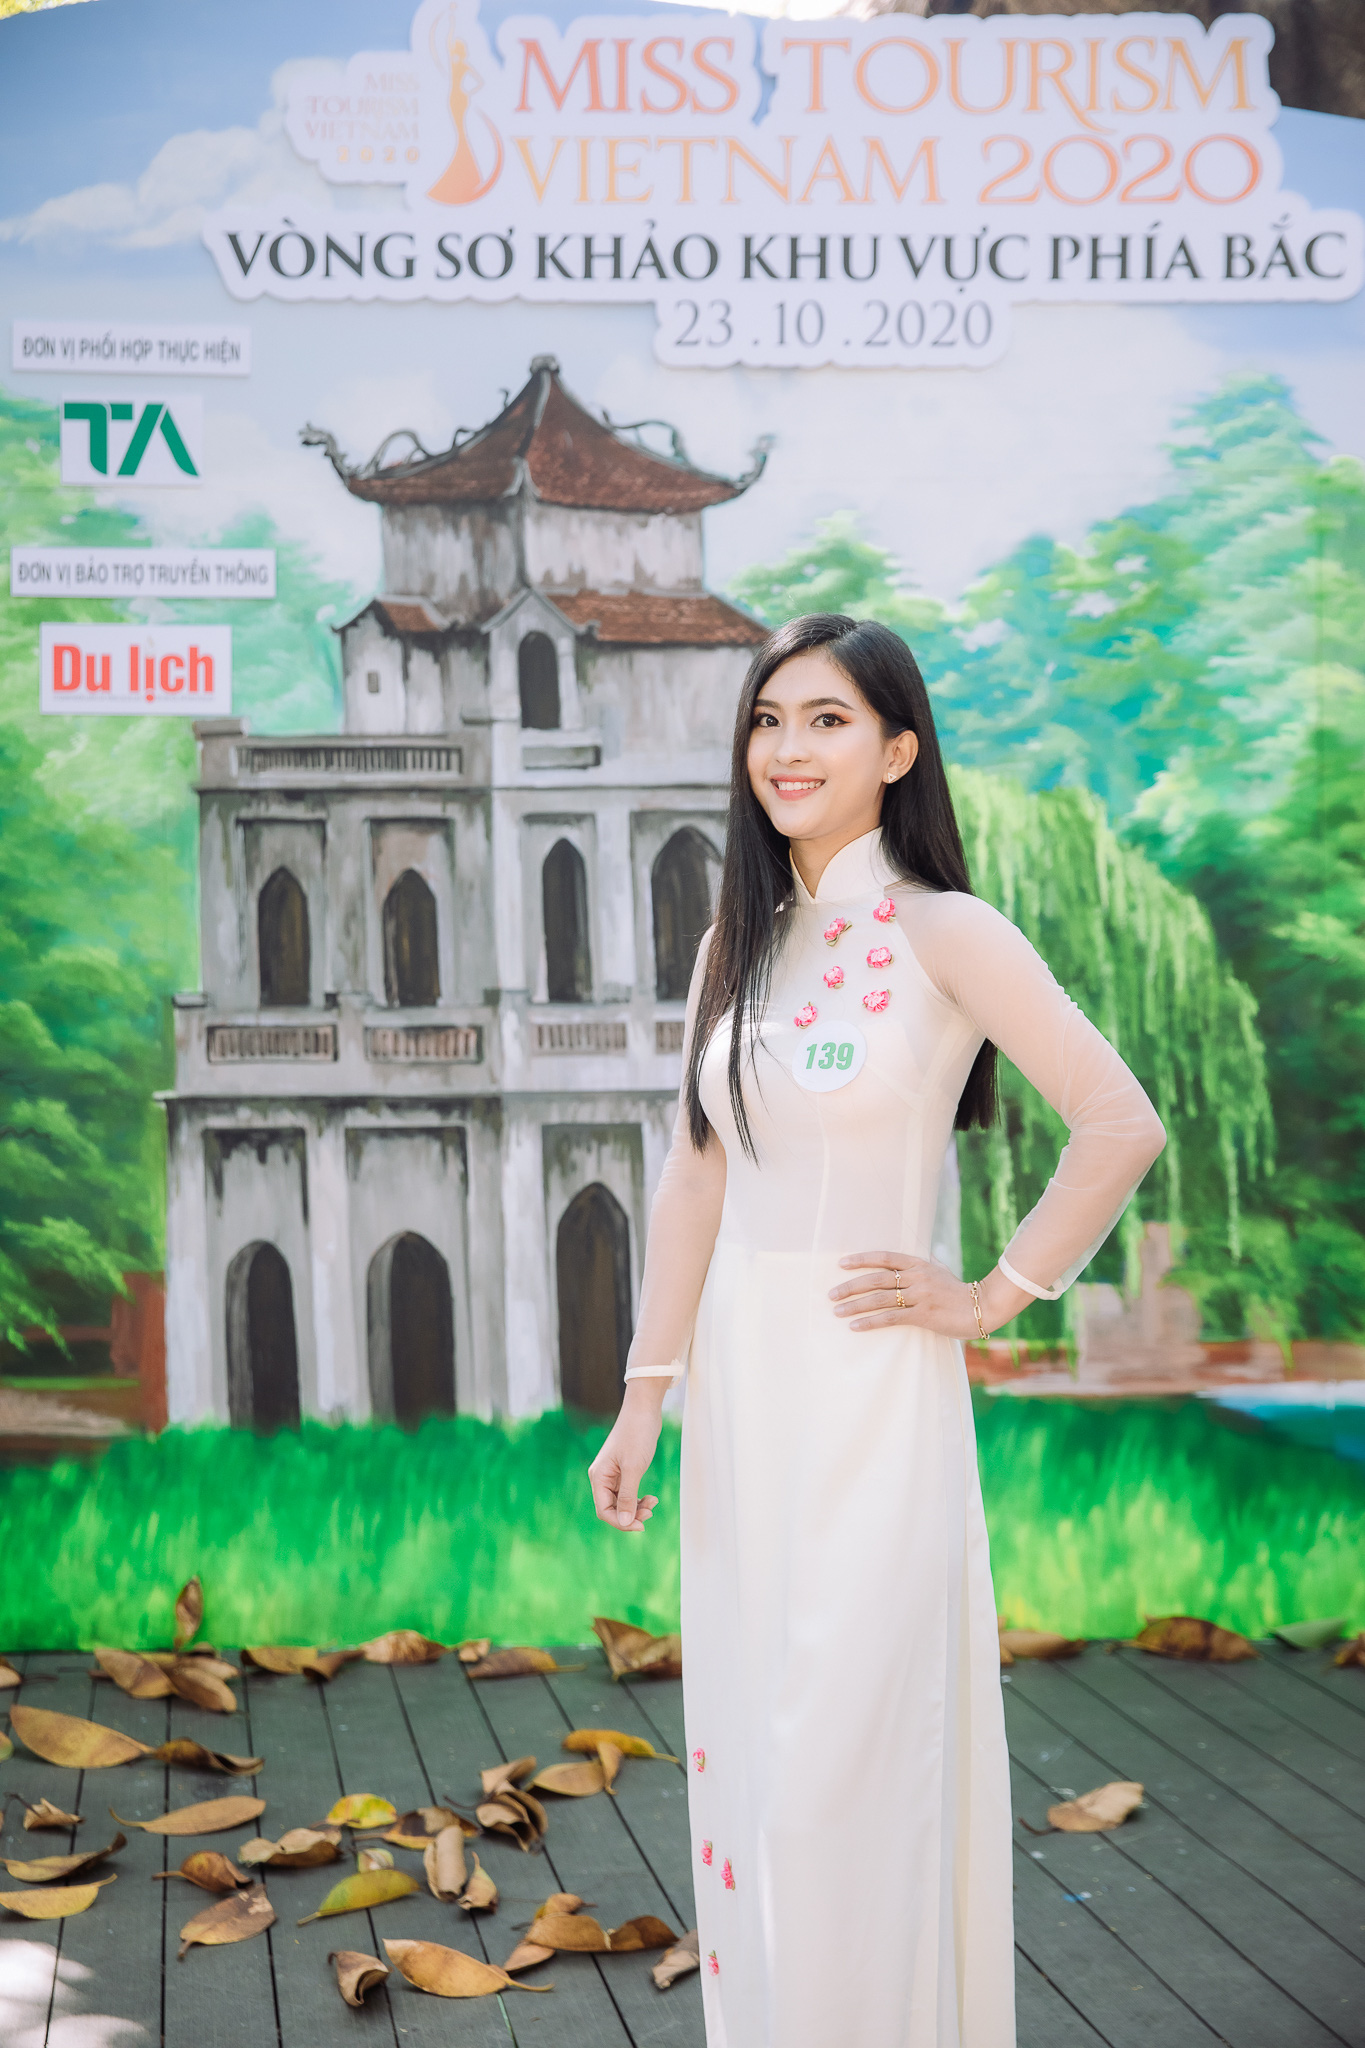 Hoa hậu Du lịch Việt Nam 2020: Chưa thấy nhan sắc nào vượt trội - Ảnh 3.